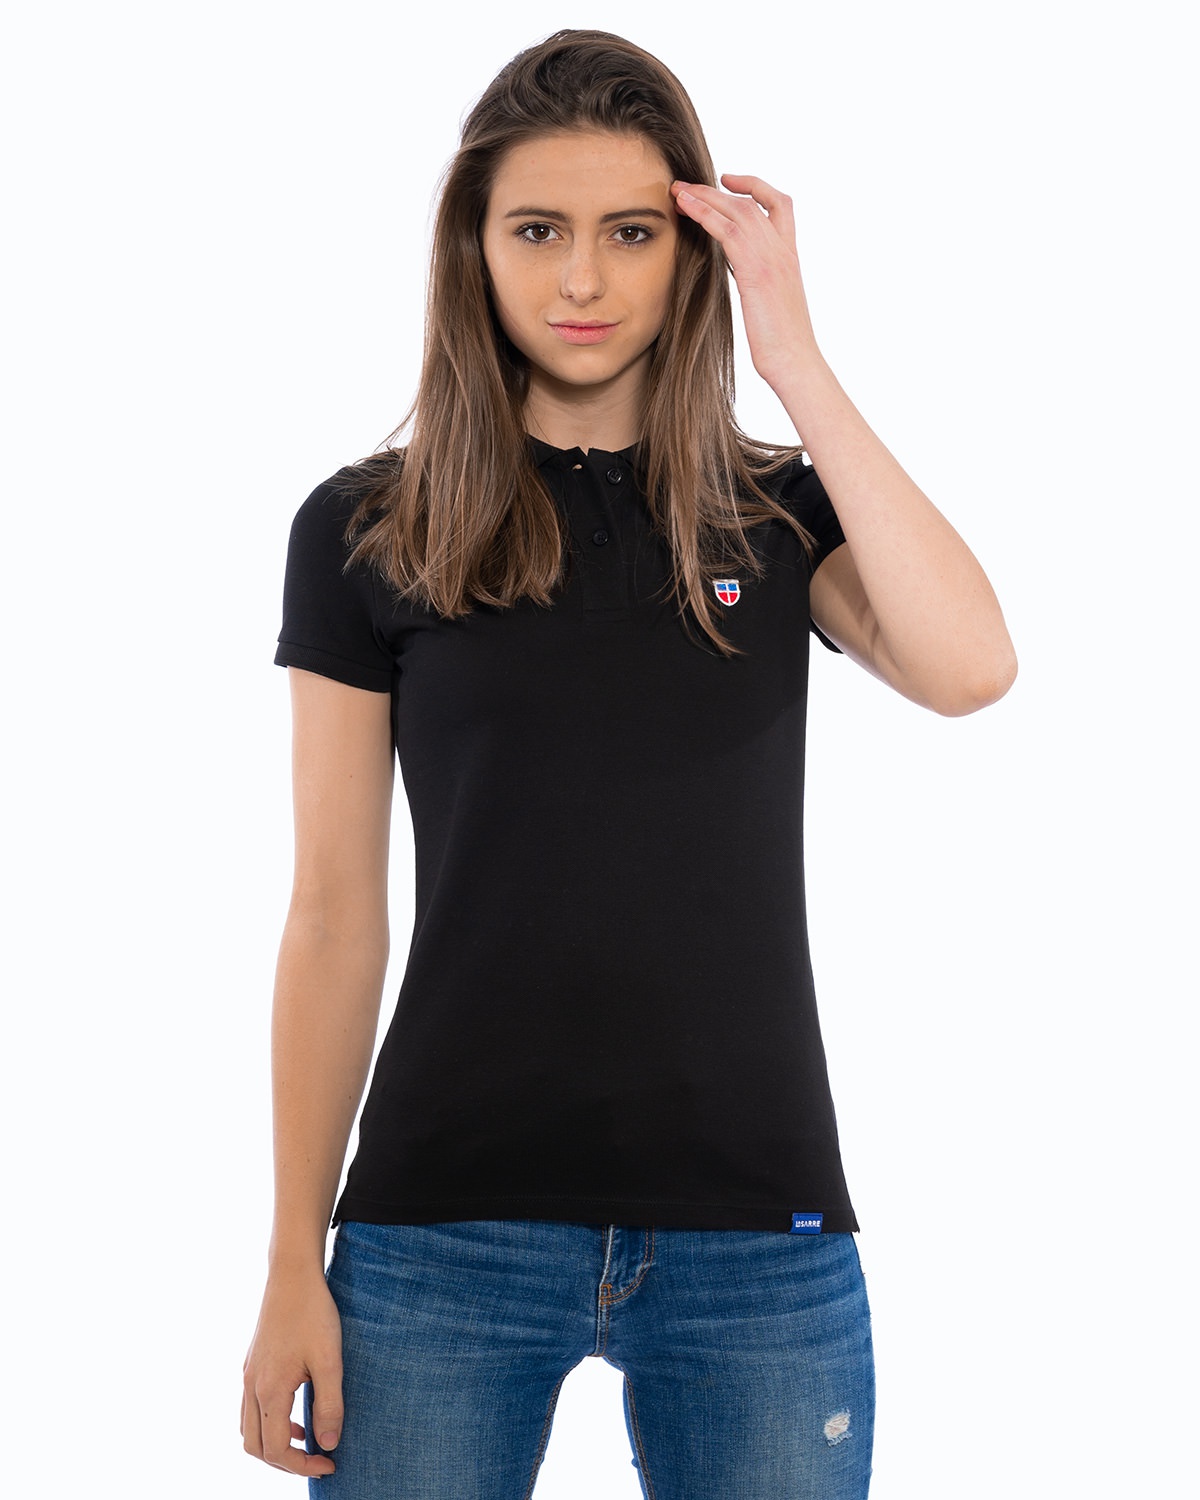 Weibliches Model in lockerer Pose im LA SARRE Ladies-Polo-Shirt. Frontal-Ansicht des Oberteils der Saarland Marke in der Farbe Schwarz mit blauem LA SARRE Saumlabel und dem Sarre-Wappen als Stickerei auf der linken Brust.